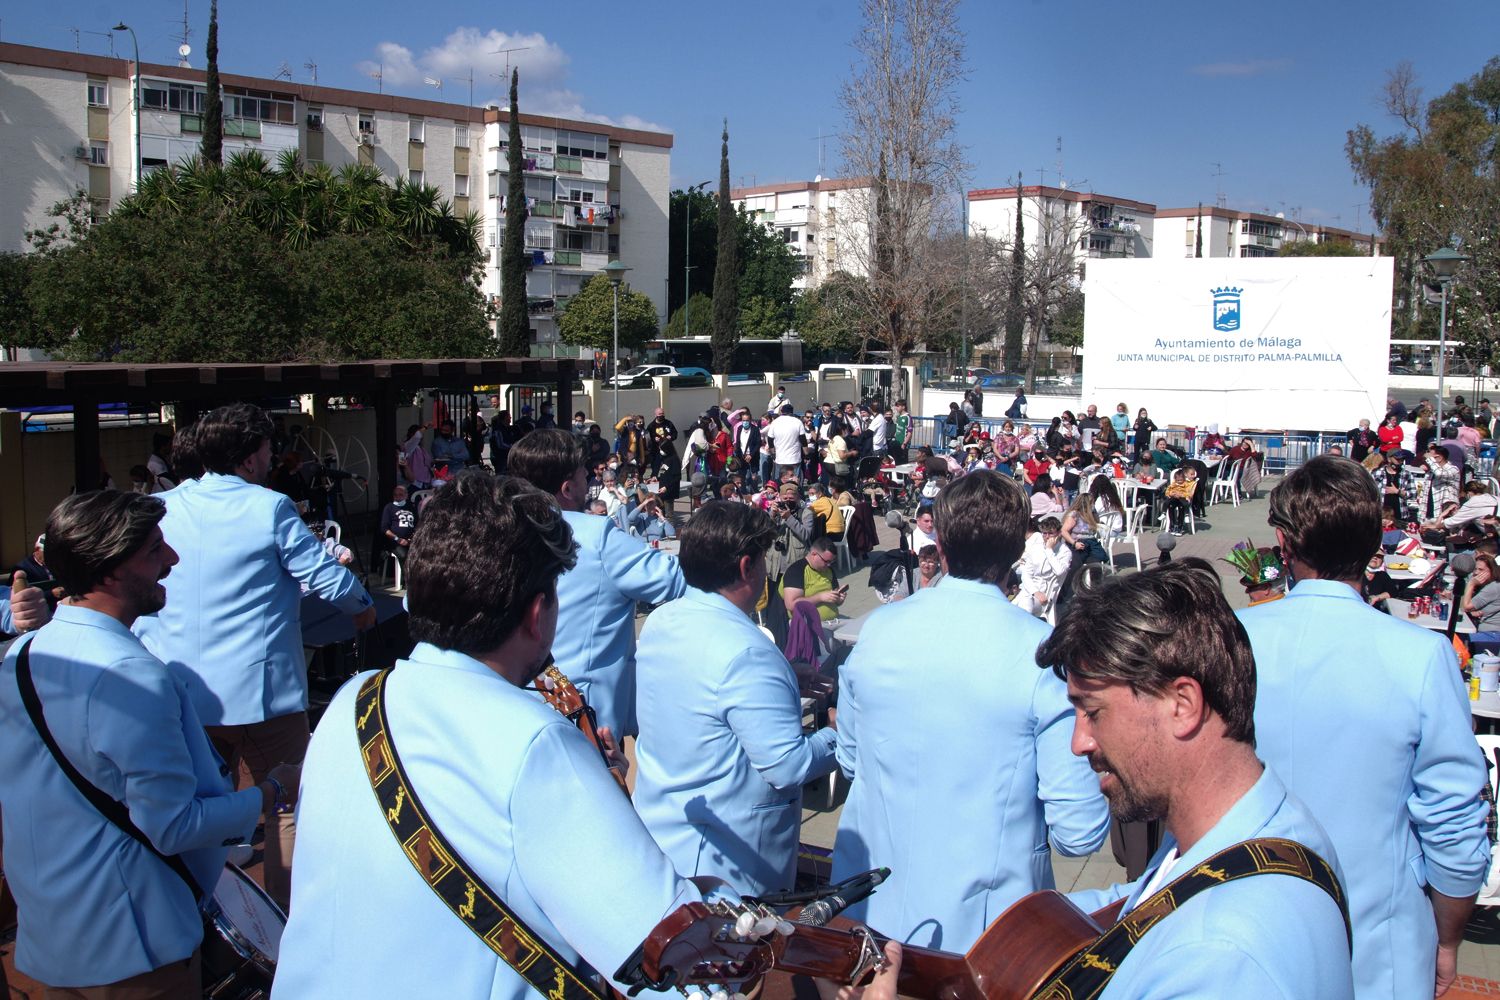 Las imágenes de la previa del Carnaval de Málaga en Palma-Palmilla